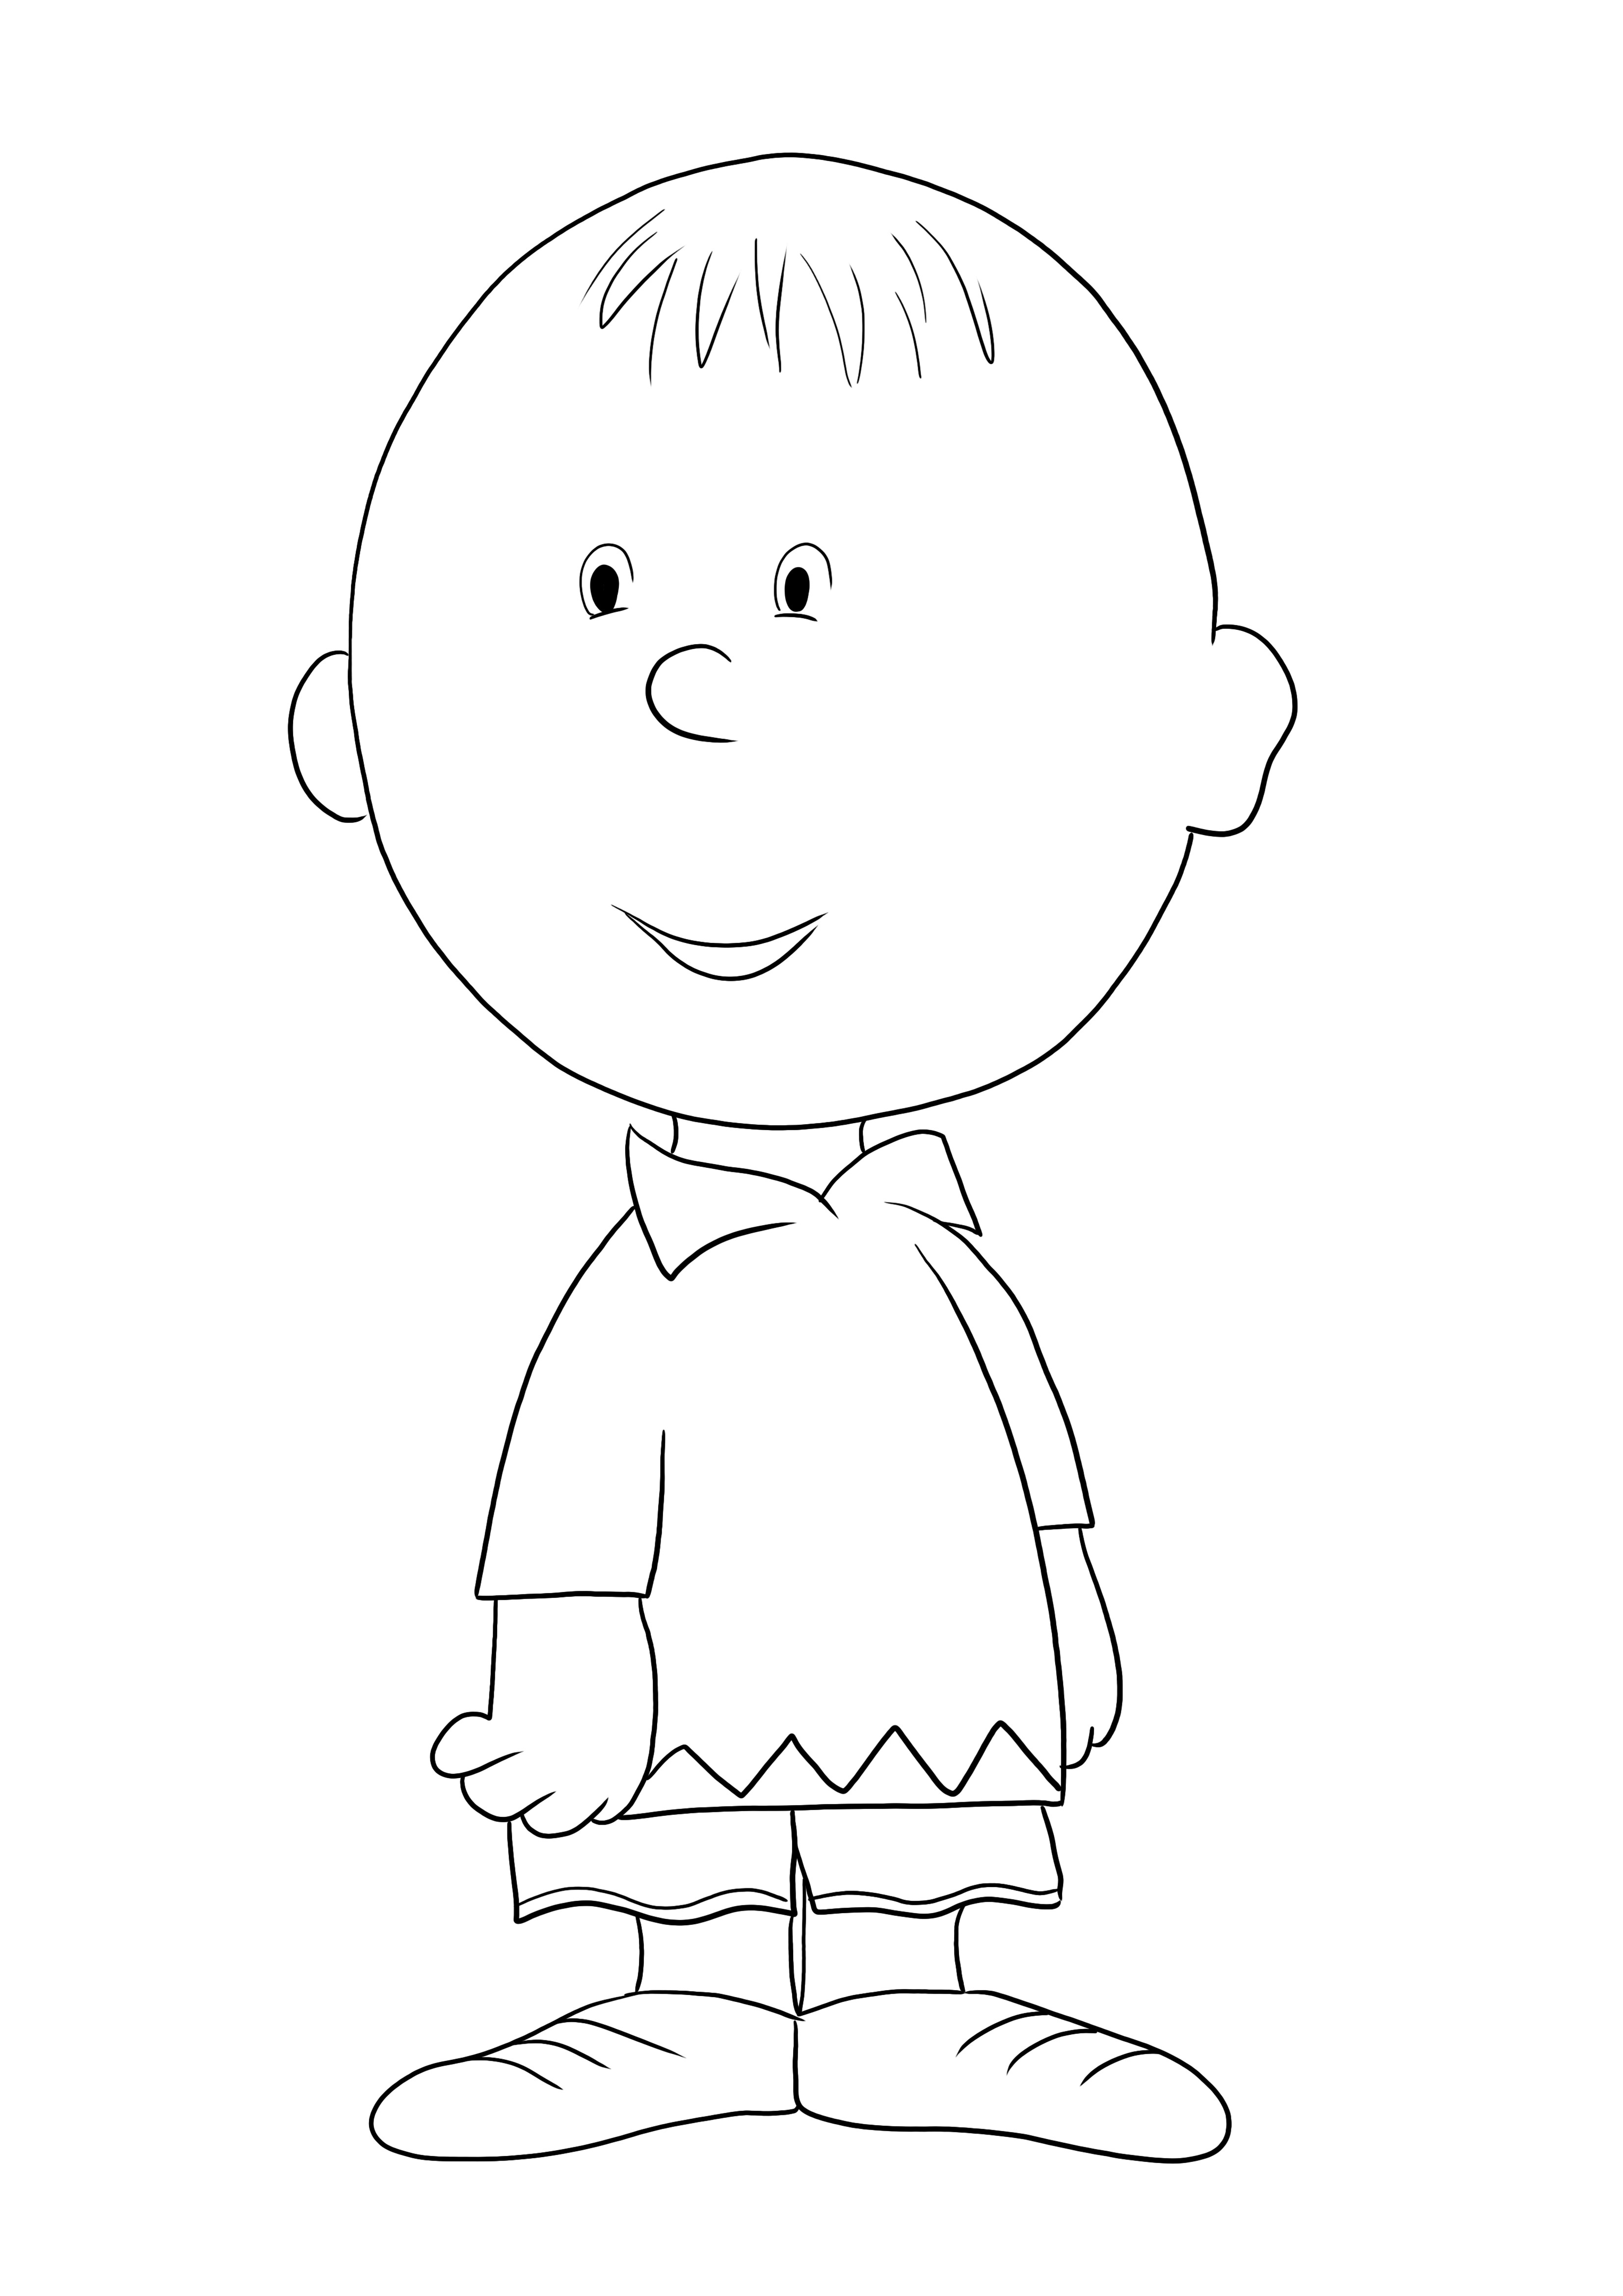 Dibujo de Charlie Brown super tierno para imprimir o descargar gratis para niños